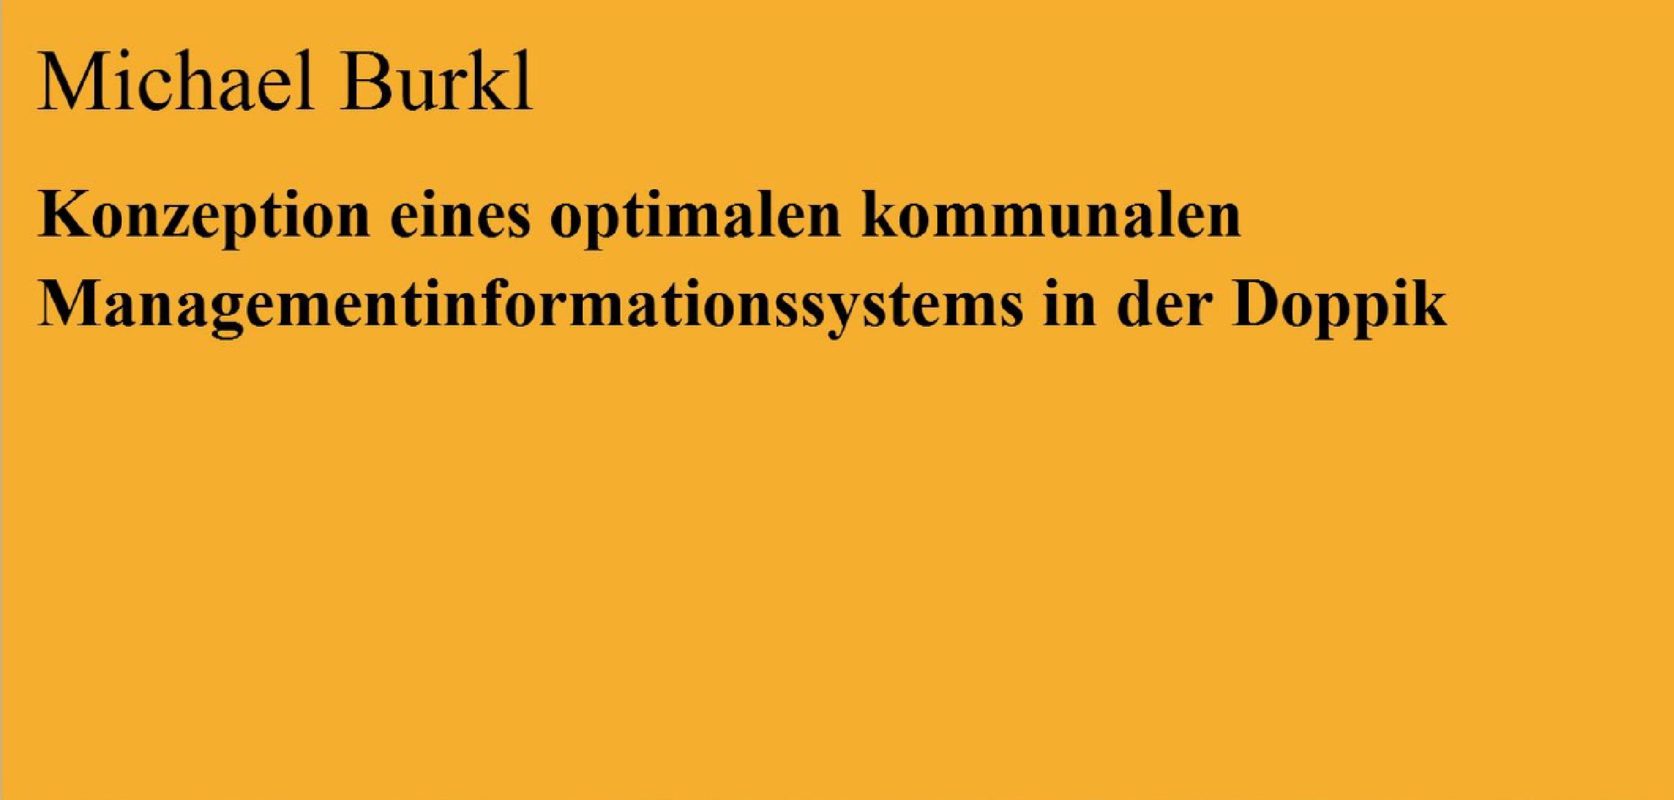 Konzeption eines optimalen kommunalen Managementinformationssystems in der Doppik